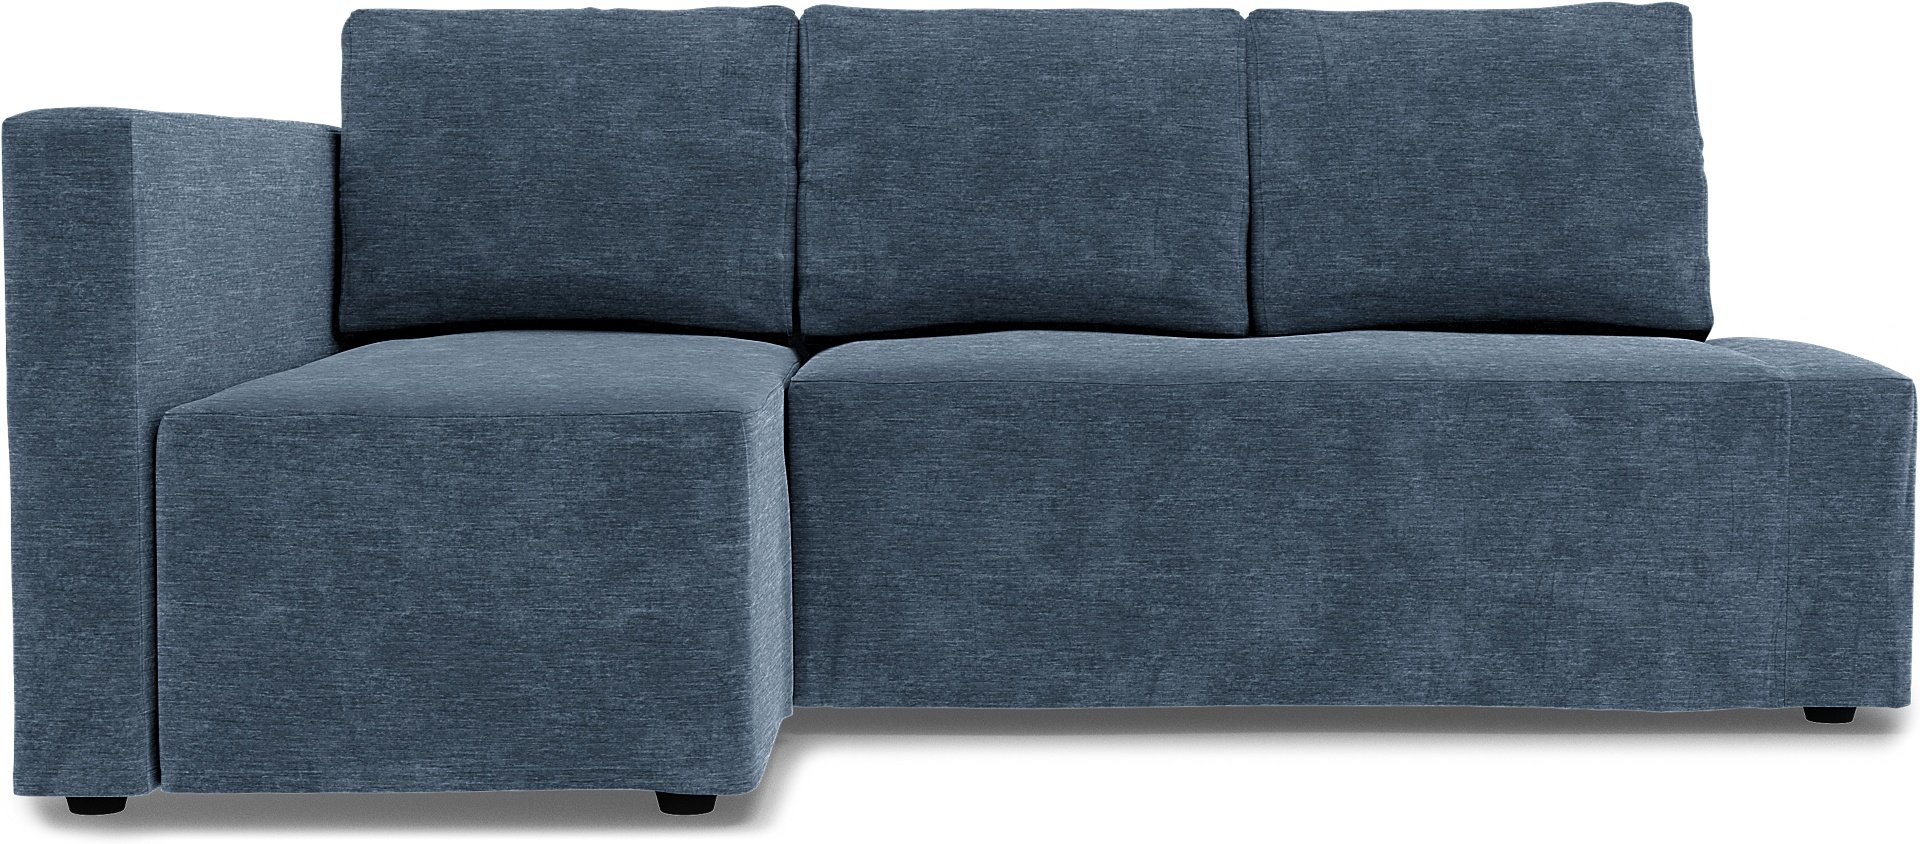 IKEA - Friheten Sofa Bed with Left Chaise Cover, Mineral Blue, Velvet - Bemz